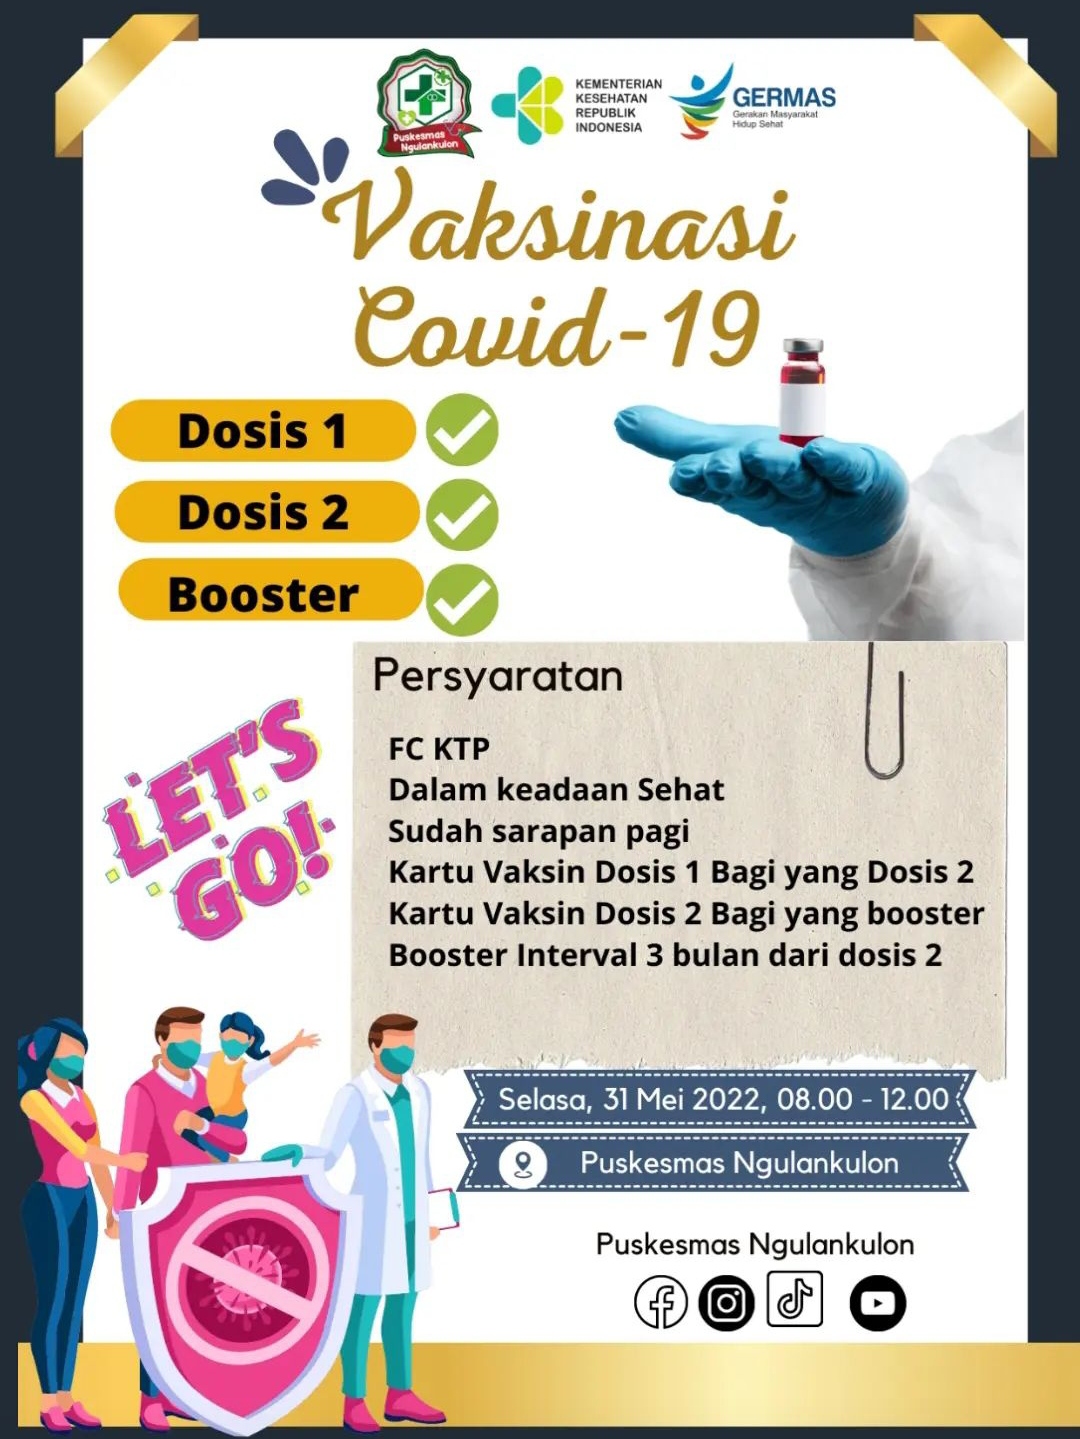 Jadwal vaksin Covid-19 di Kecamatan Pogalan